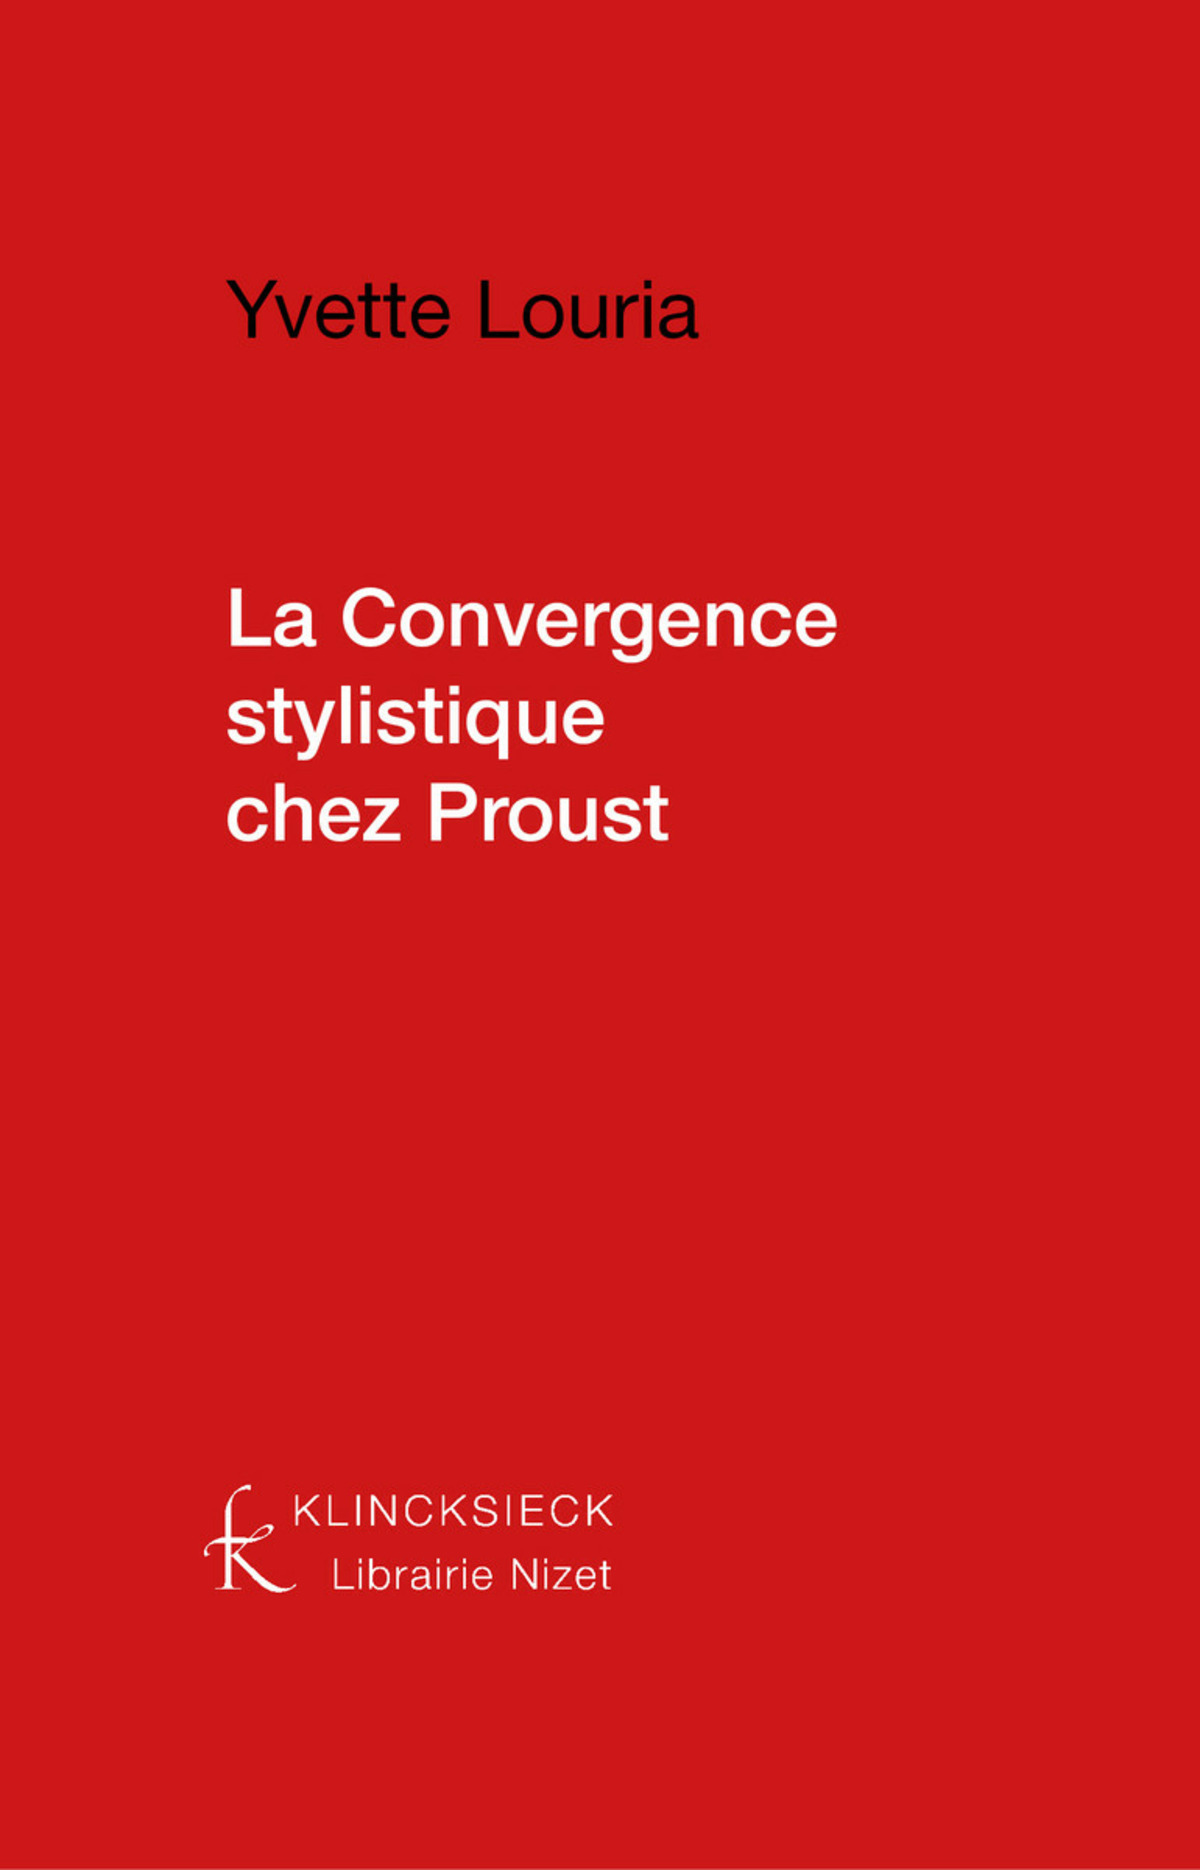 La Convergence stylistique chez Proust